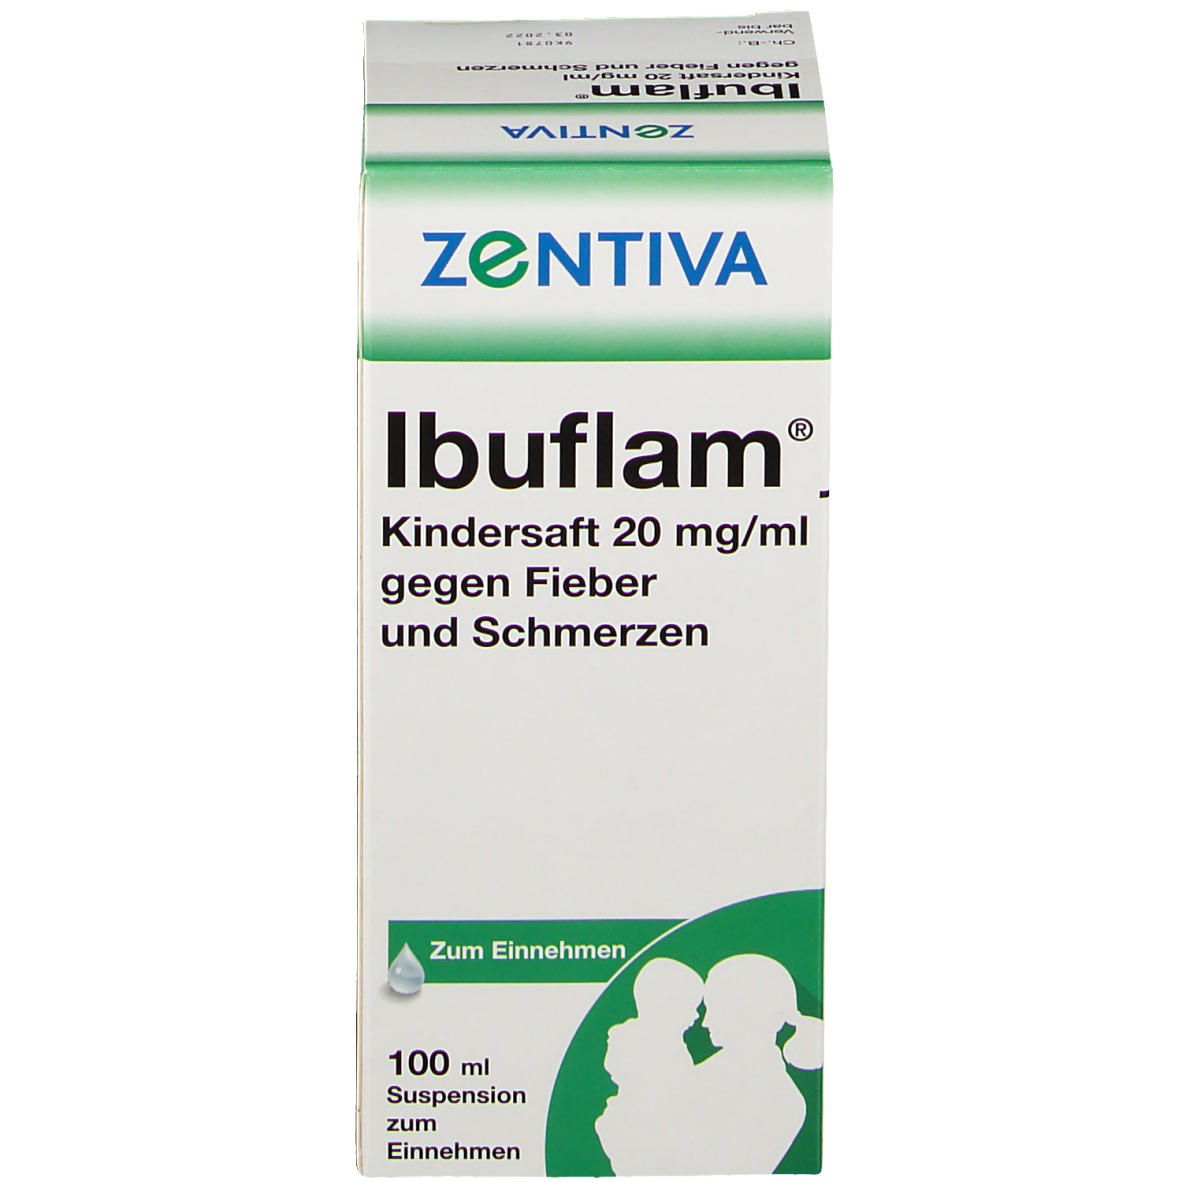 Zentiva ibuflam